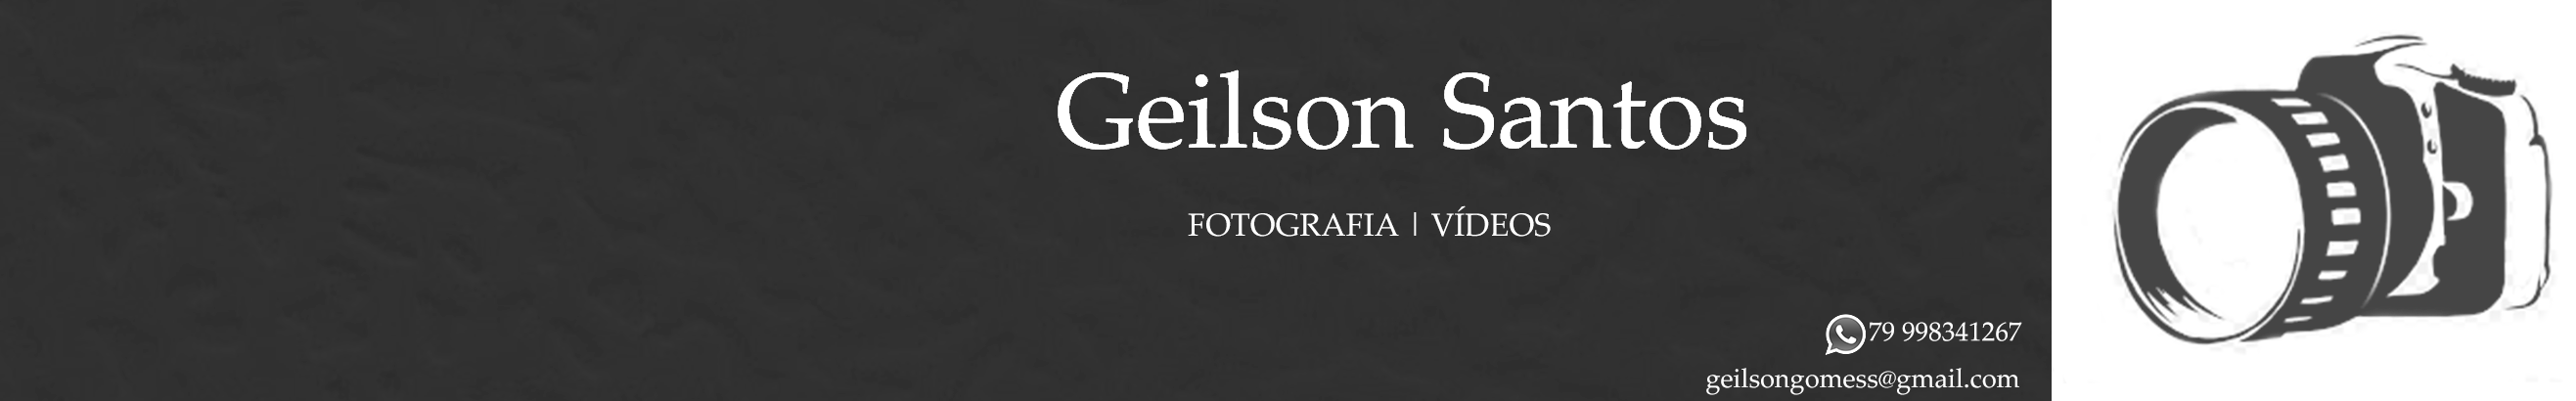 Profil-Banner von Geilson Santos